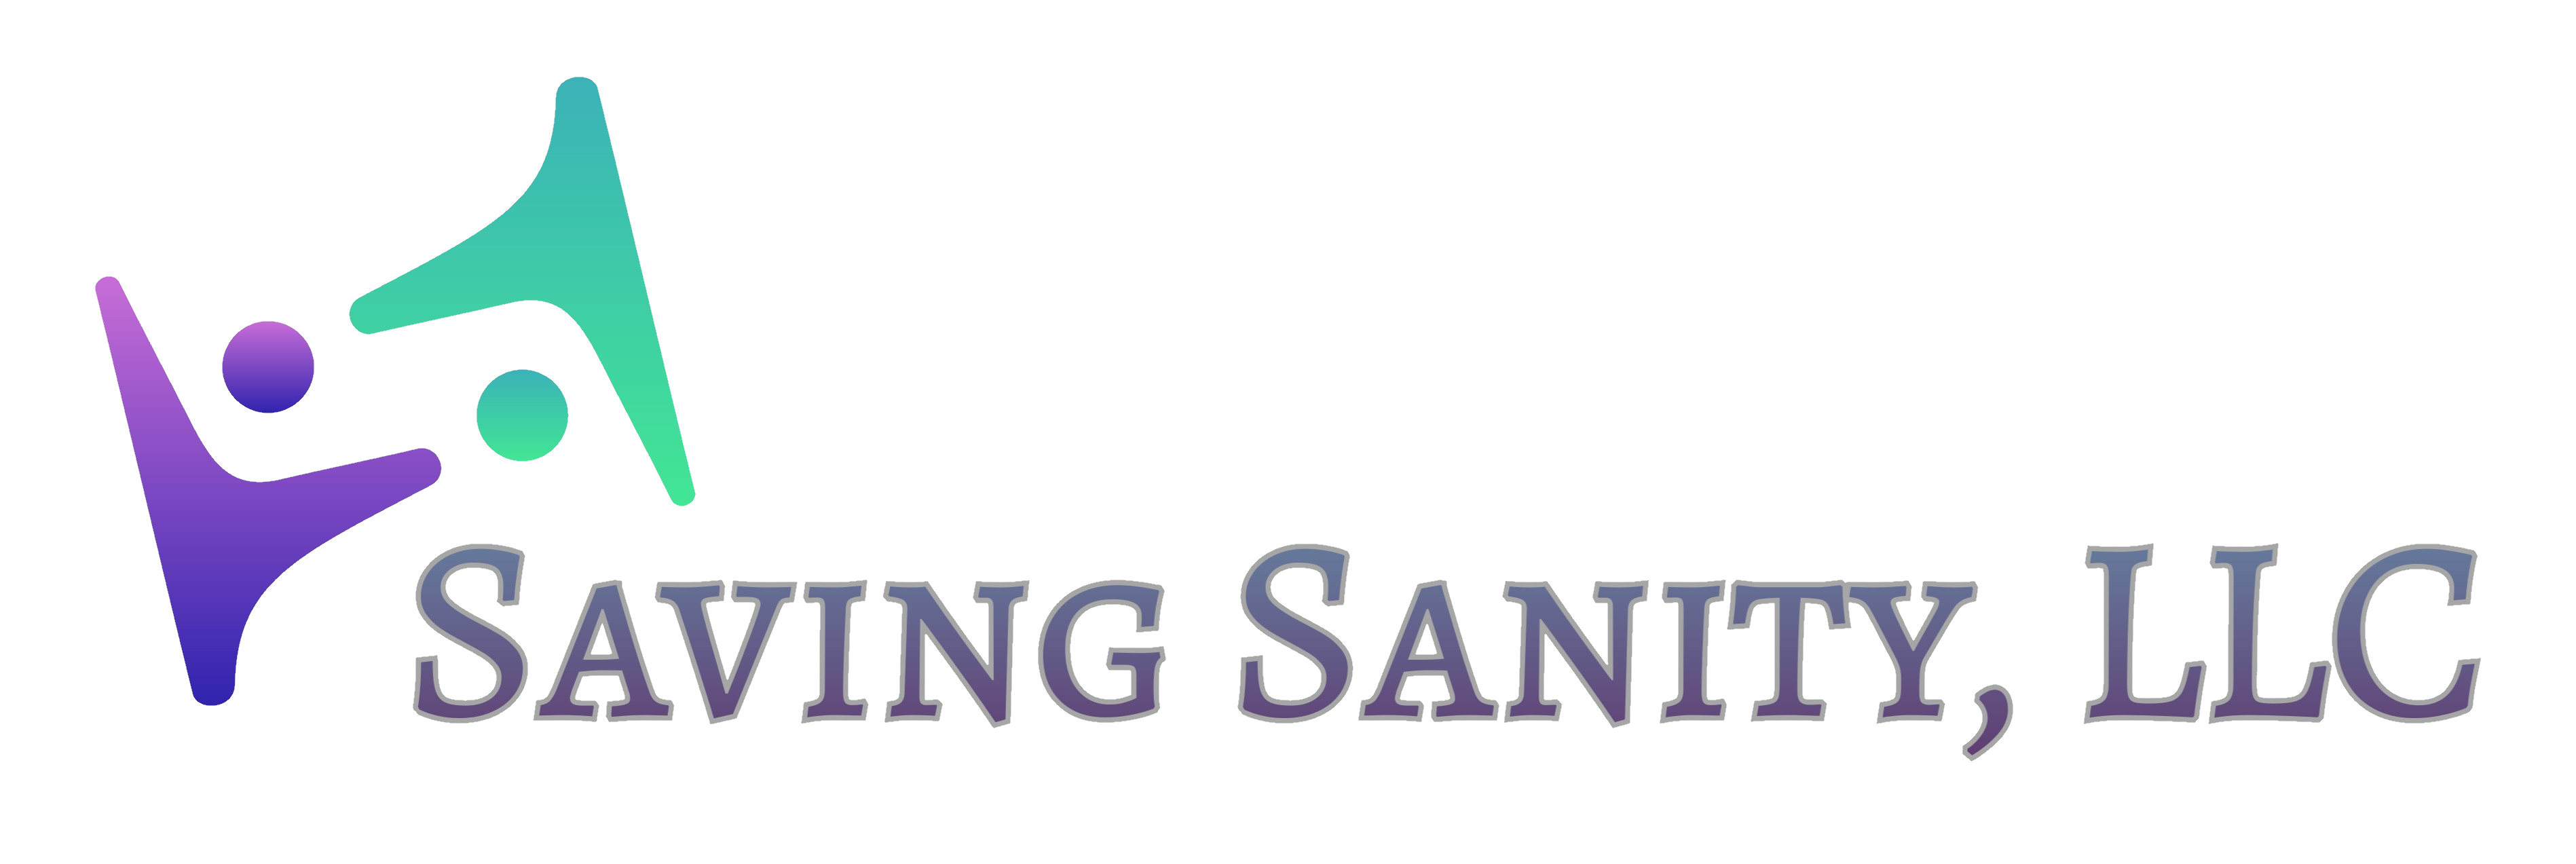 saving sanity logo